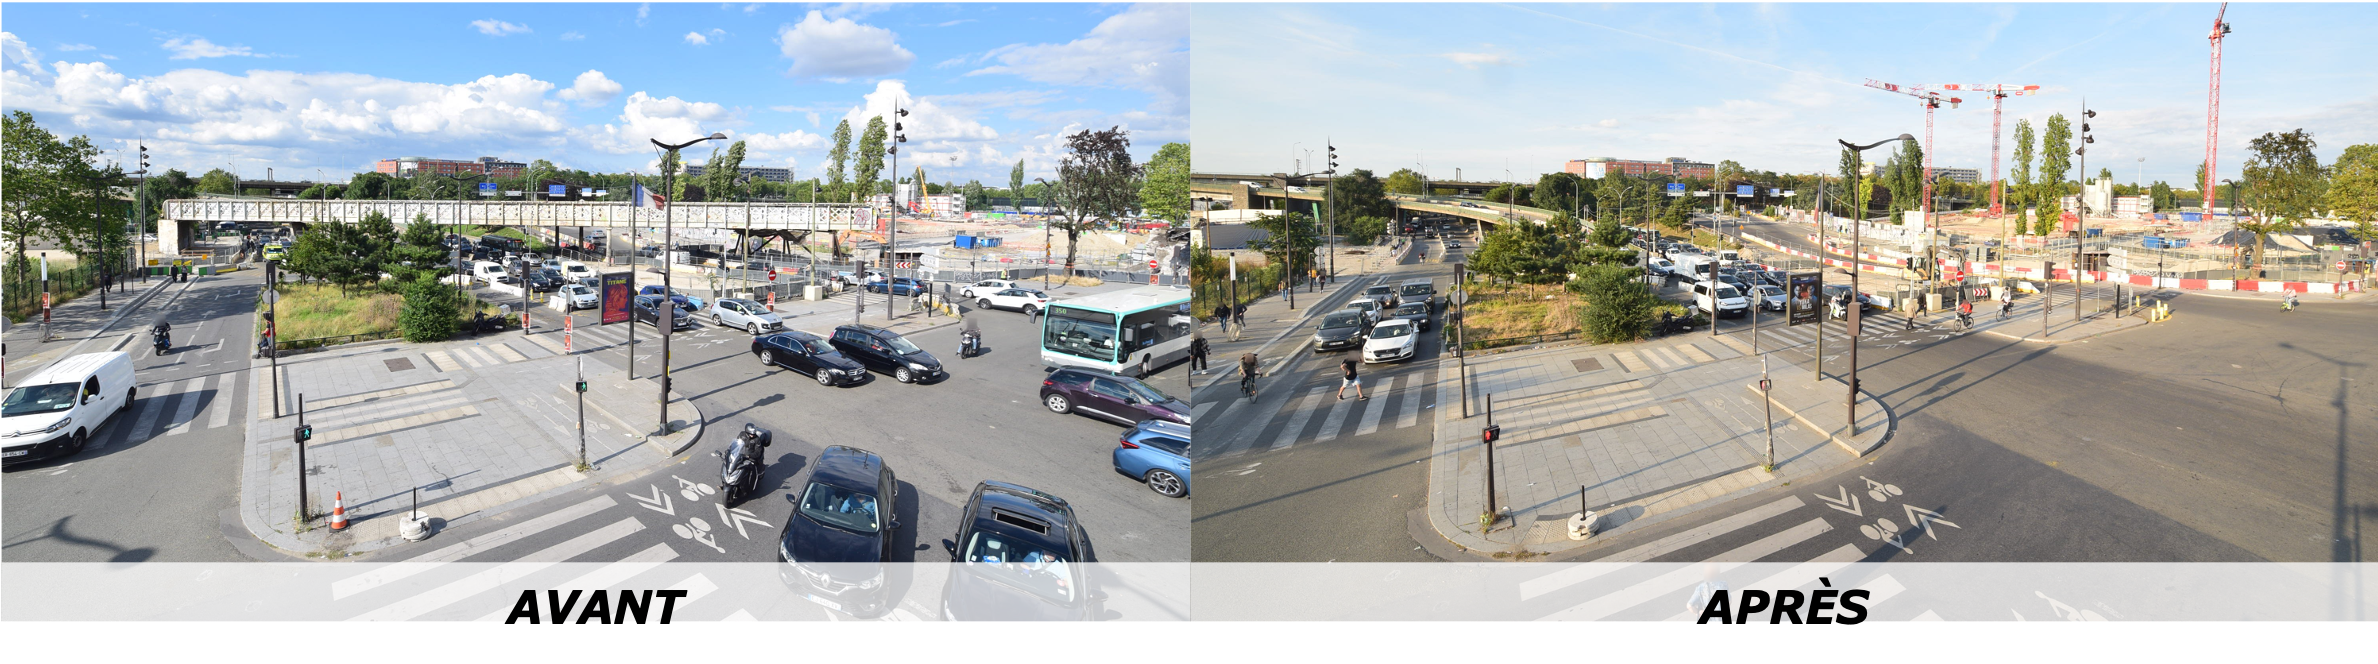 Vue de la Porte de la Chapelle avant et après le démantèlement des ponts